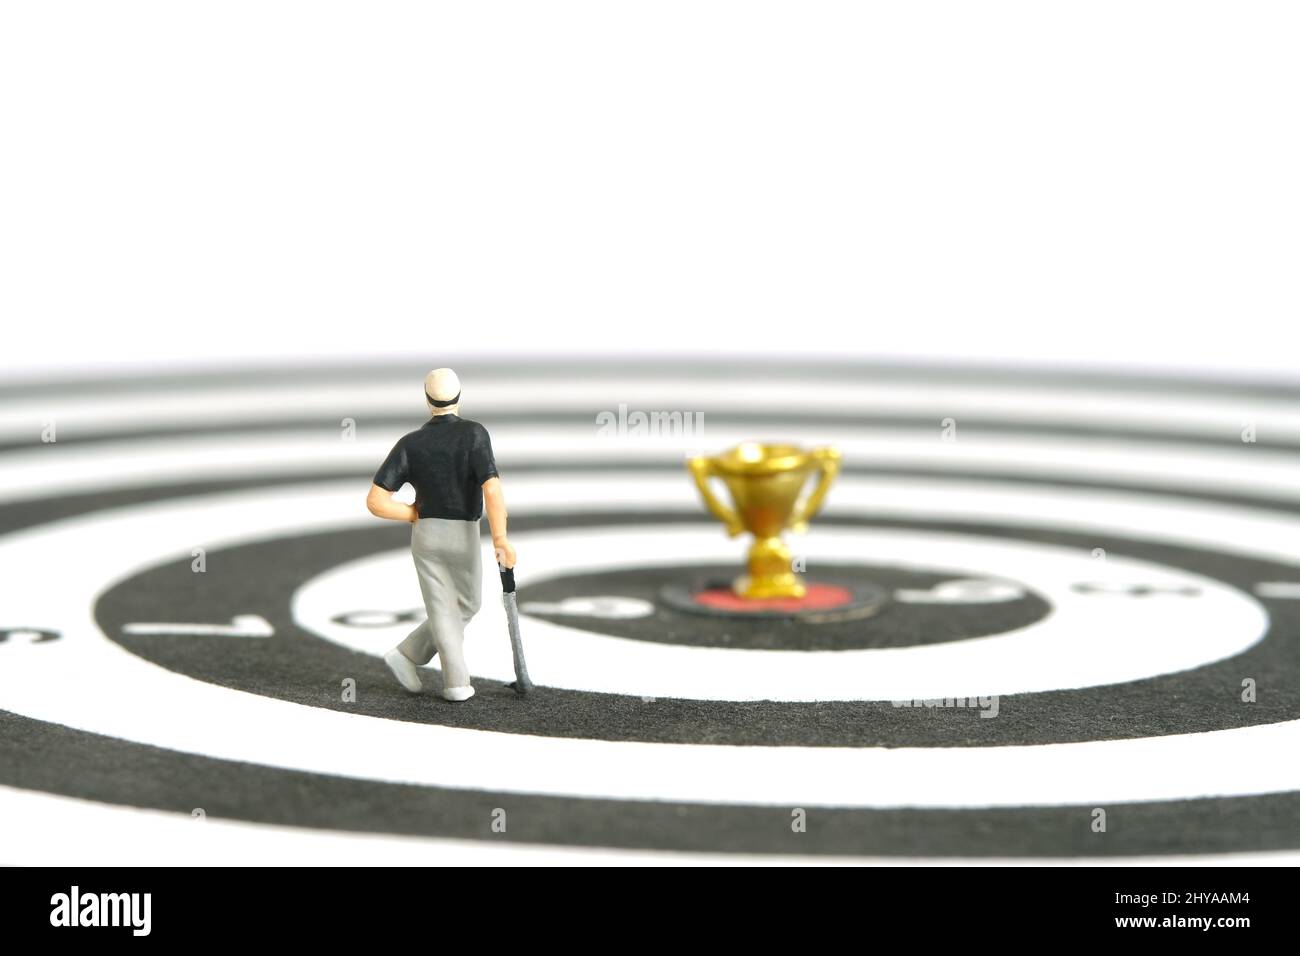 Miniatur Menschen Spielzeug Figur Fotografie. Ein Golfer für Männer, der über der Dartscheibe steht, mit einer goldenen Trophäe in der Mitte, isoliert auf weißem Hintergrund. Bild pho Stockfoto